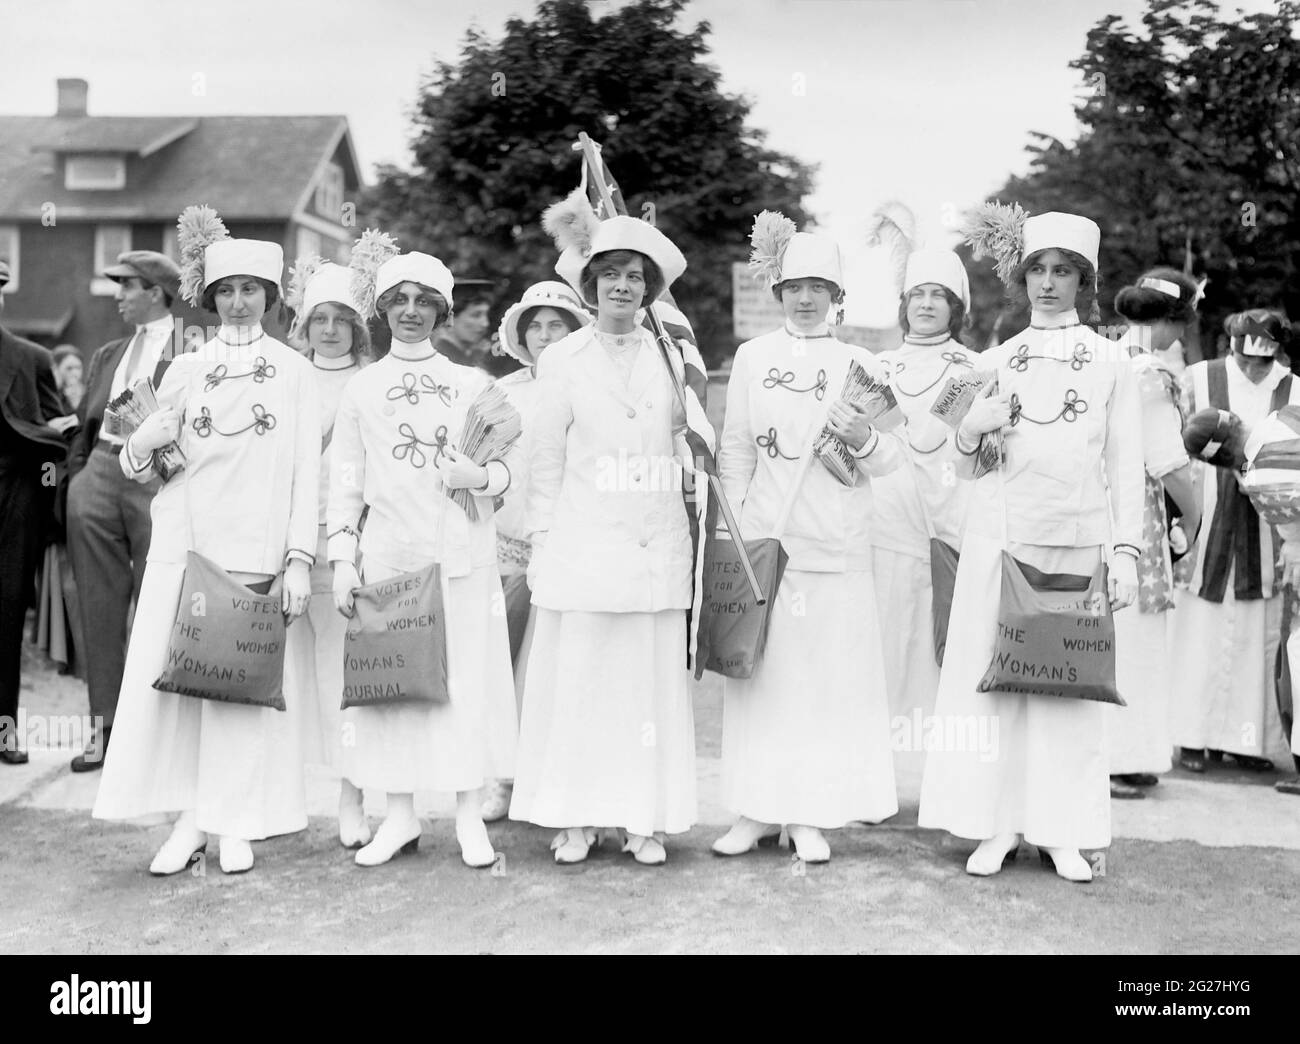 Elisabeth Freeman, ainsi que son groupe de jeunes filles du mouvement du suffrage des femmes. Banque D'Images